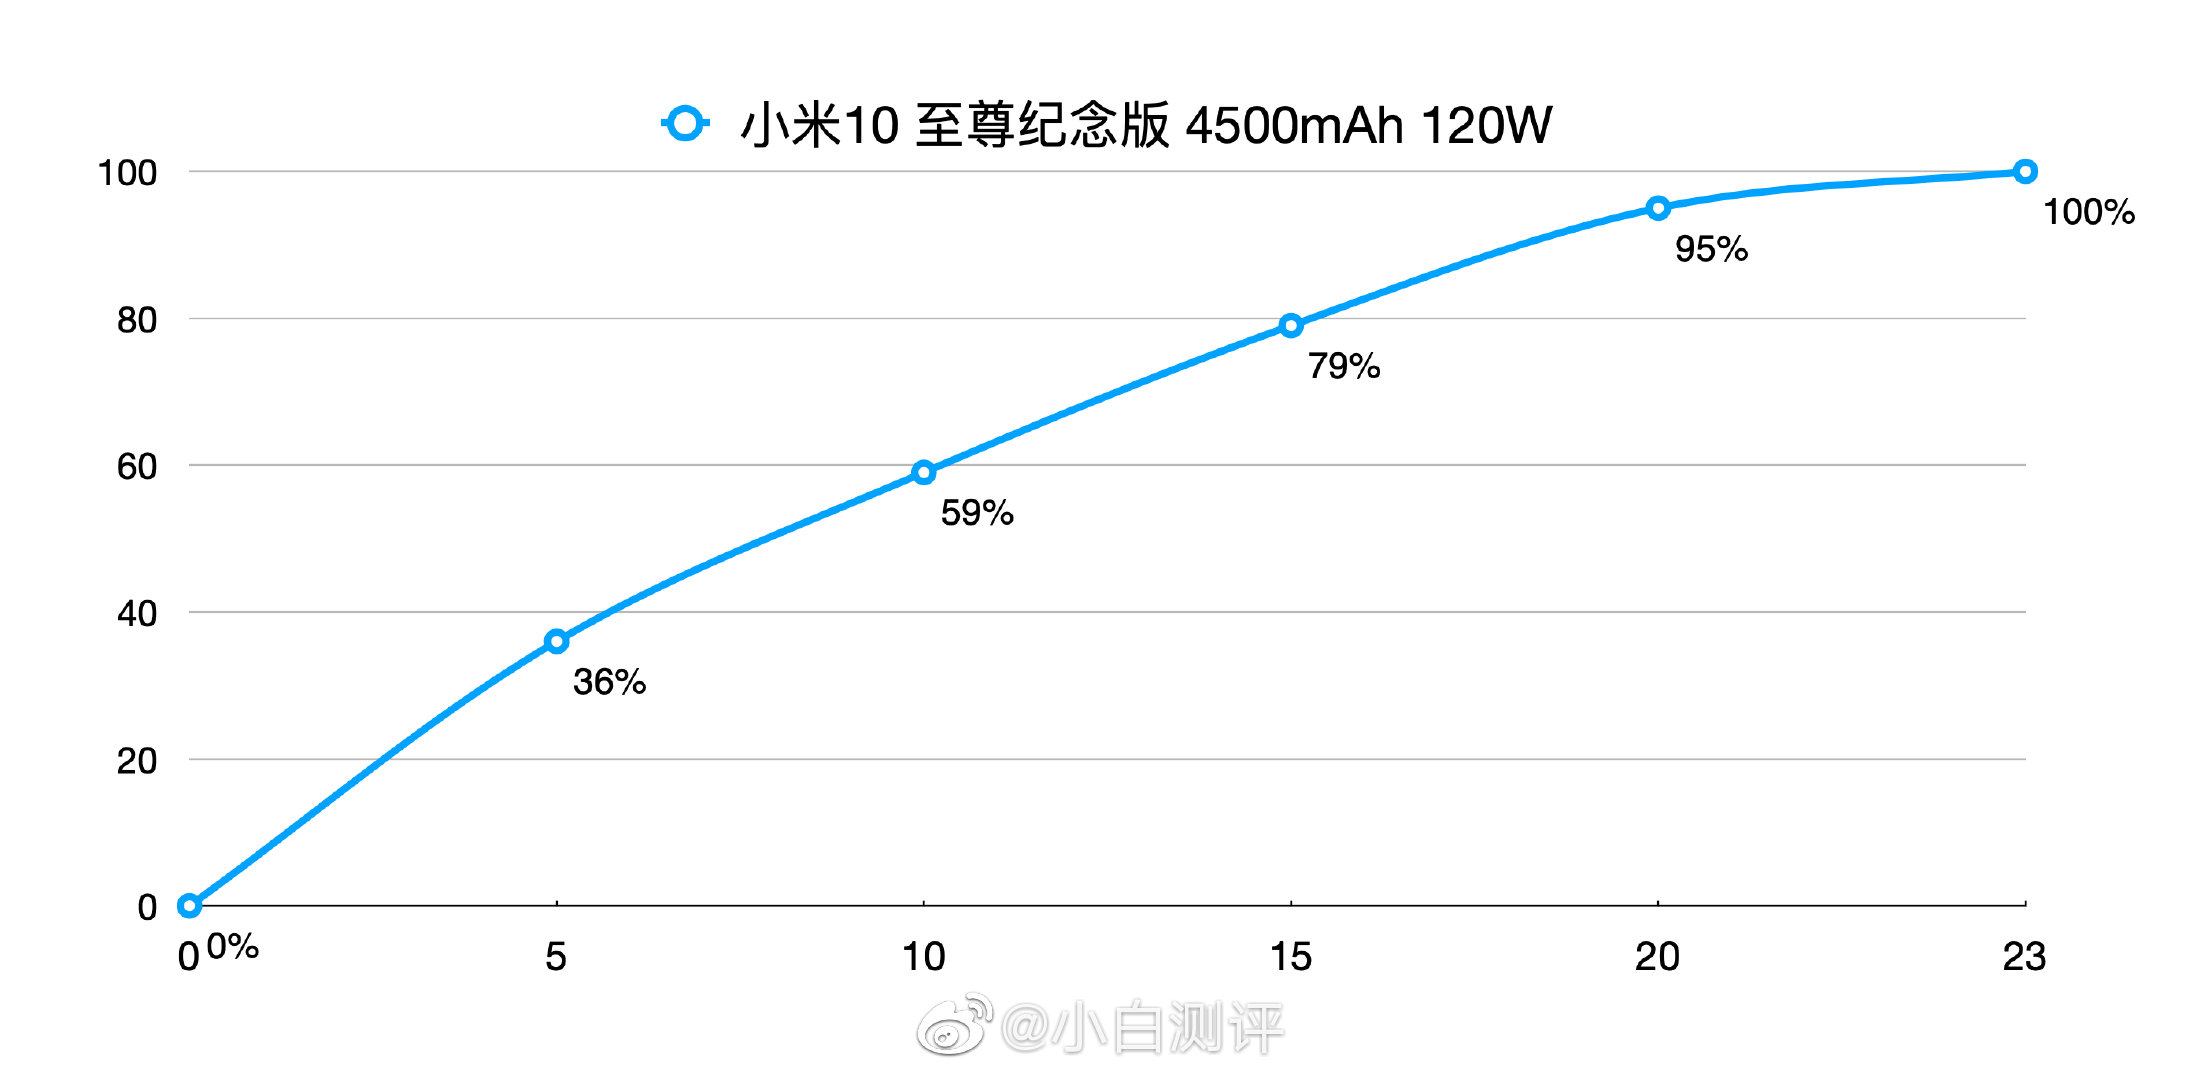 ładowarka 120 W dla Xiaomi Mi 10 Ultra jak szybko ładuje się bateria opinie specyfikacja dane techniczne